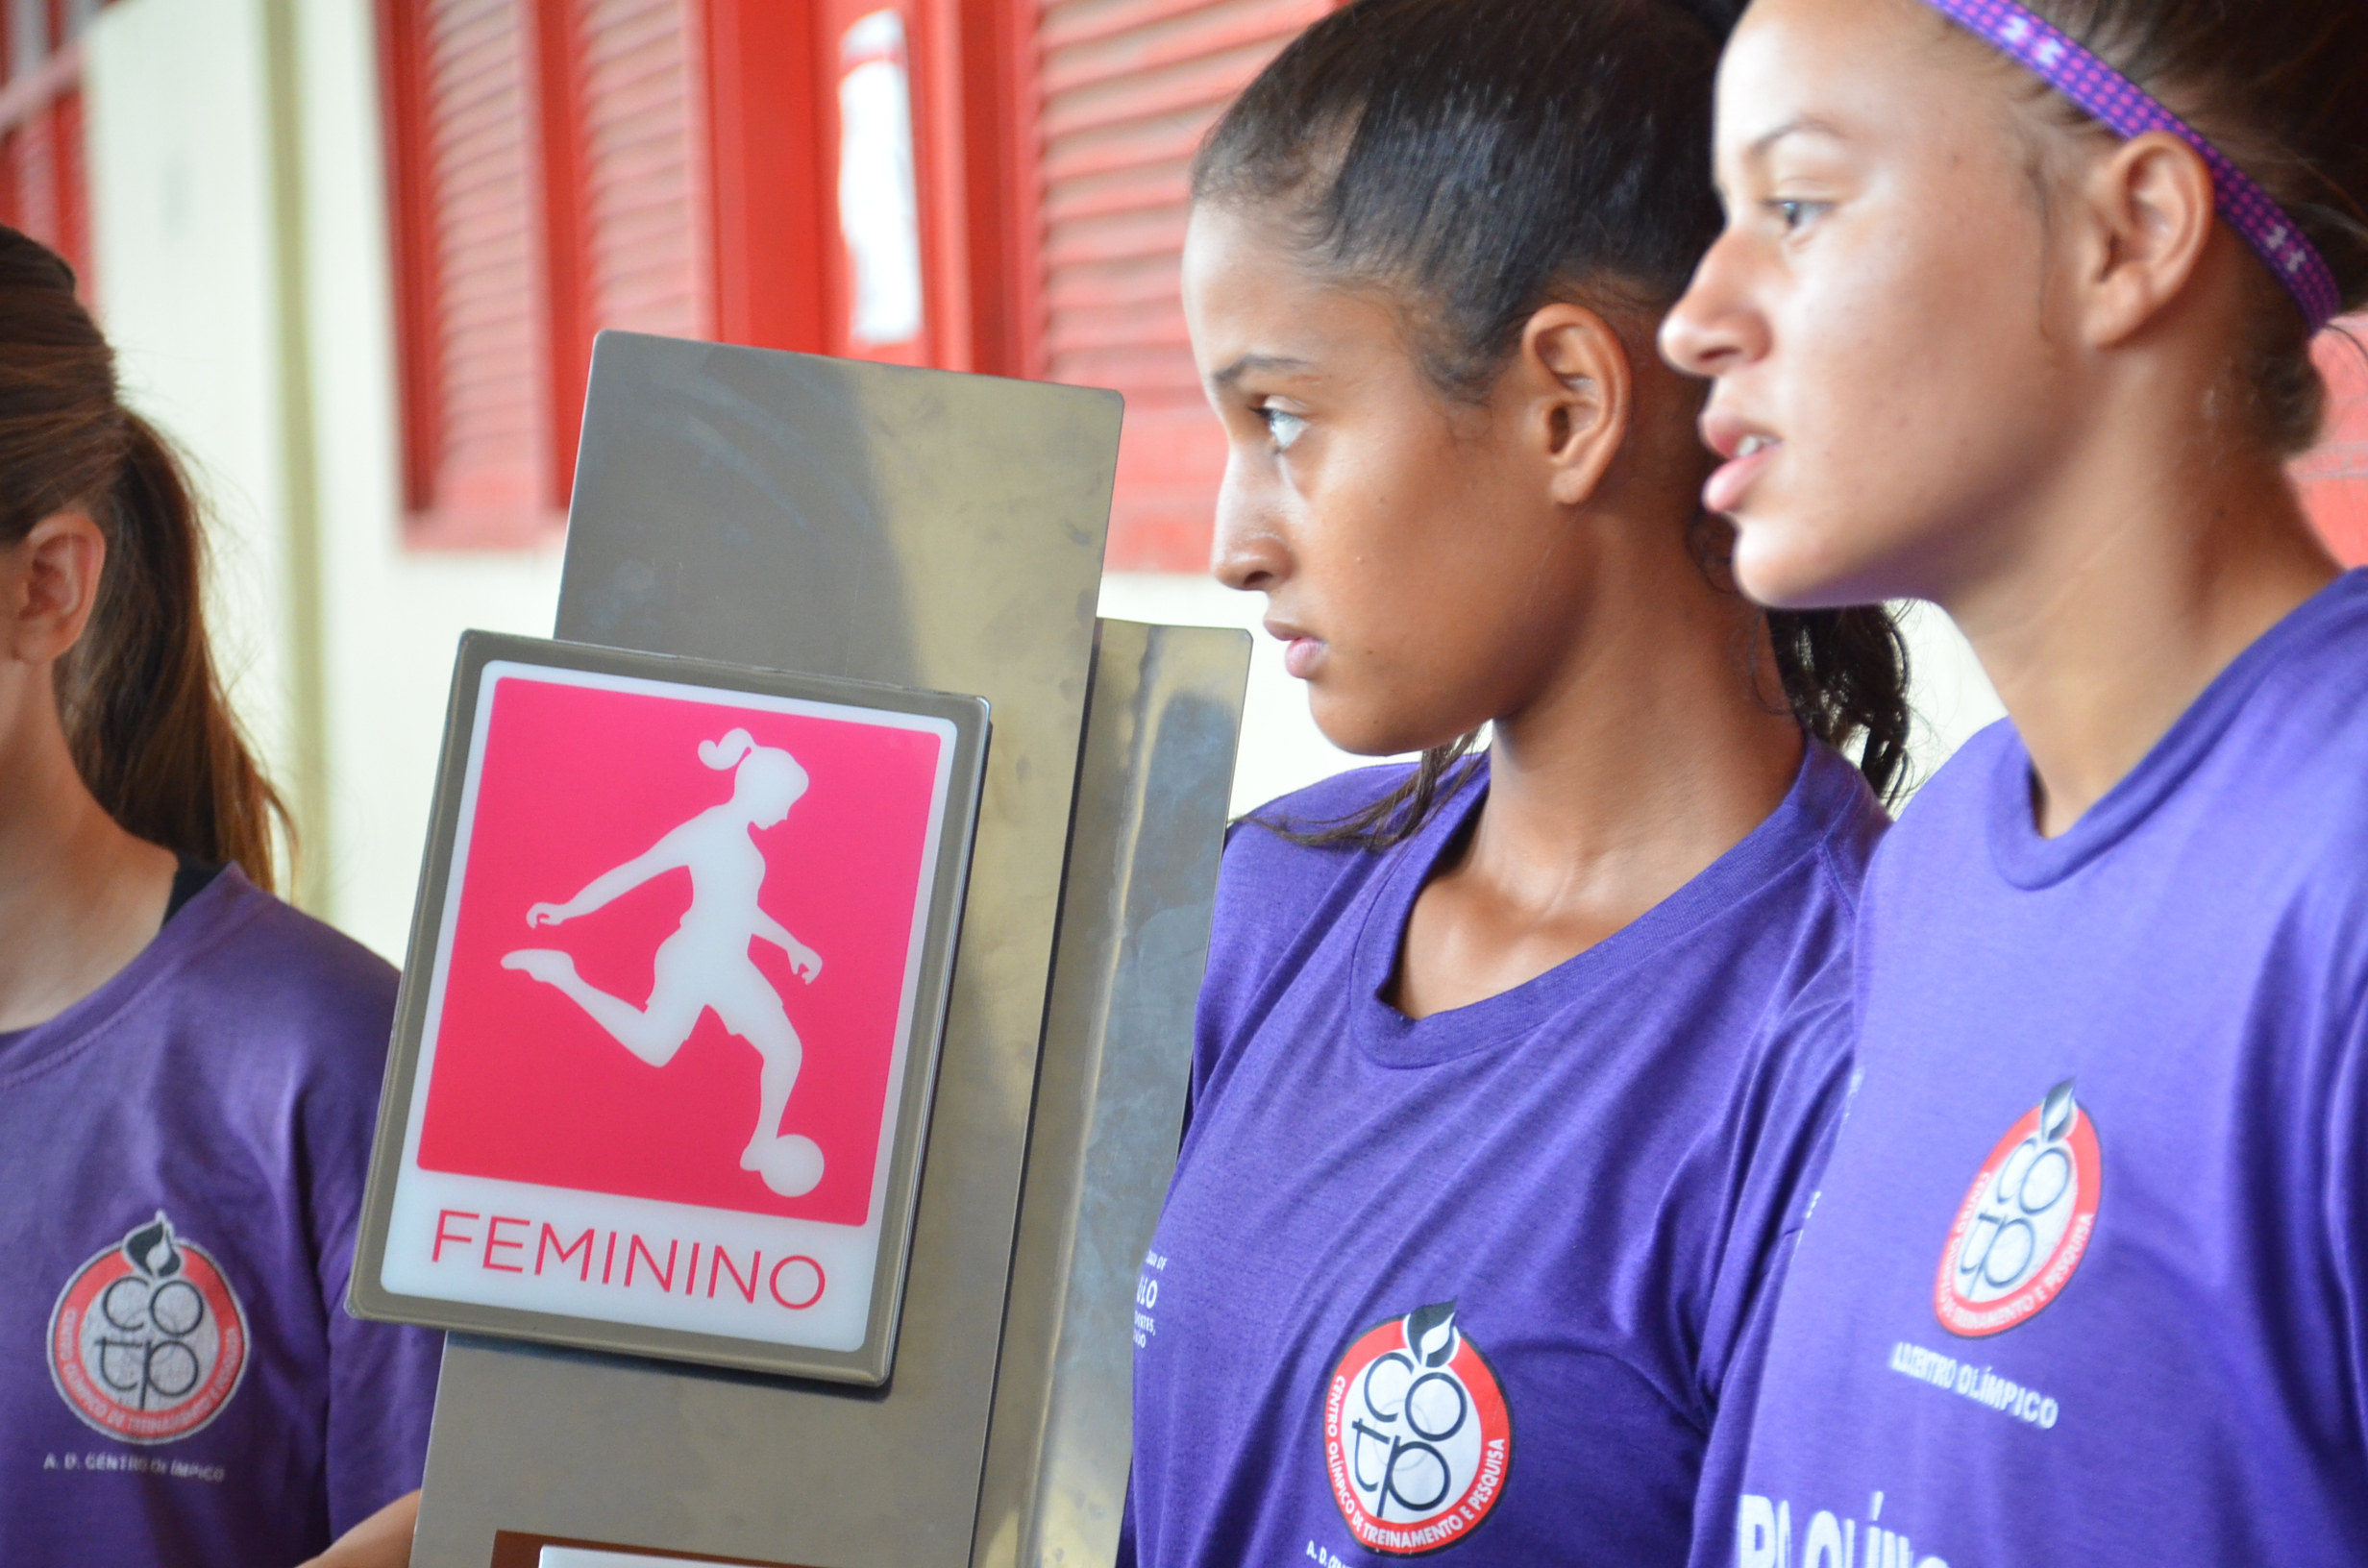 Meninas do futebol com uma placa em foco escrito "feminino" e uma arte de mulher jogando